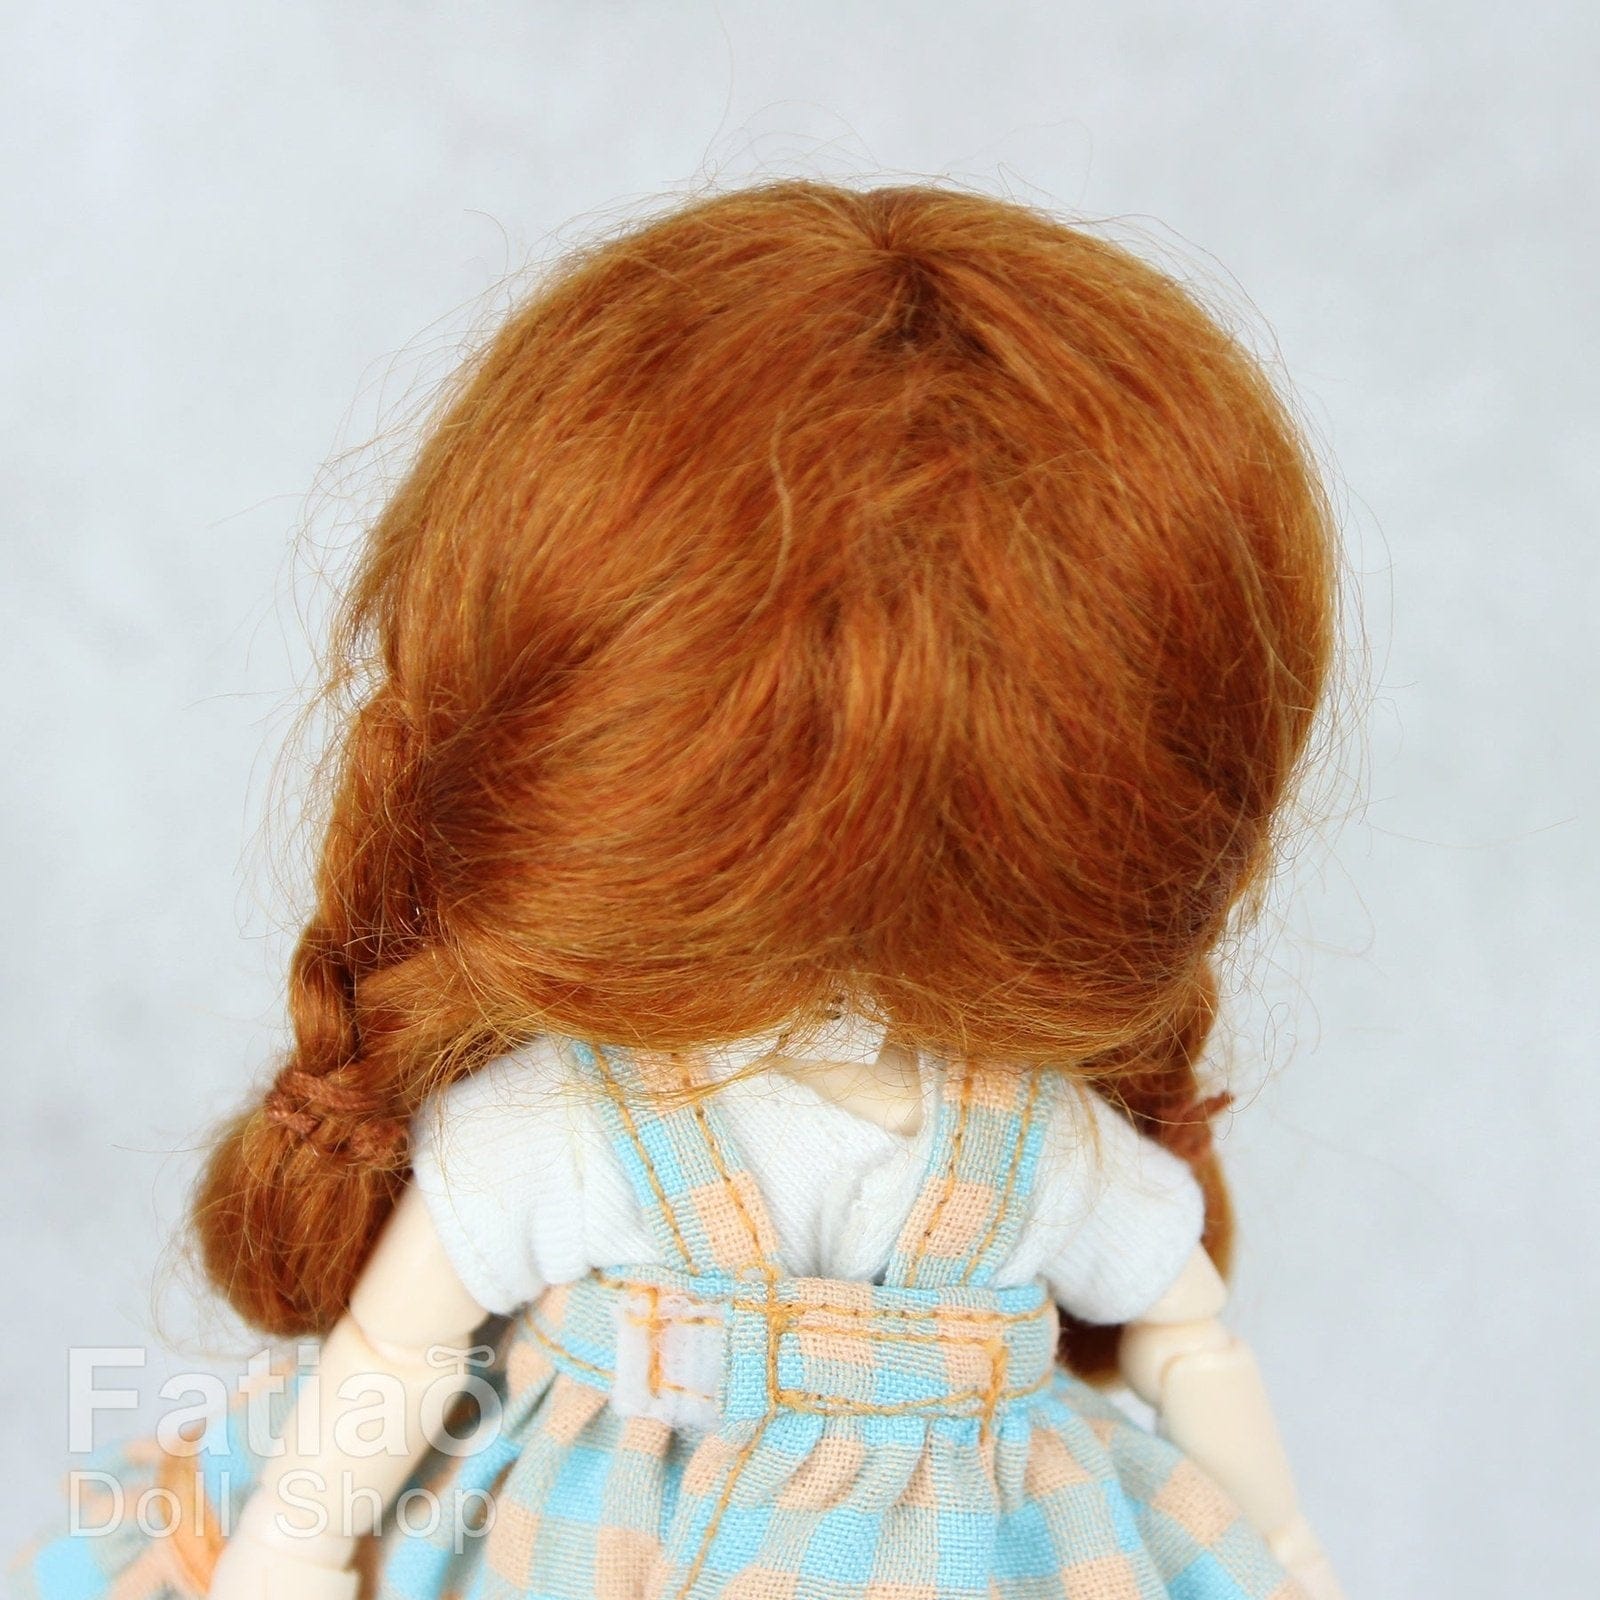 【Fatiao Doll Shop】FWF-143M 娃用假髮 多色 / 3-4吋 BJD 12分 pukipuki